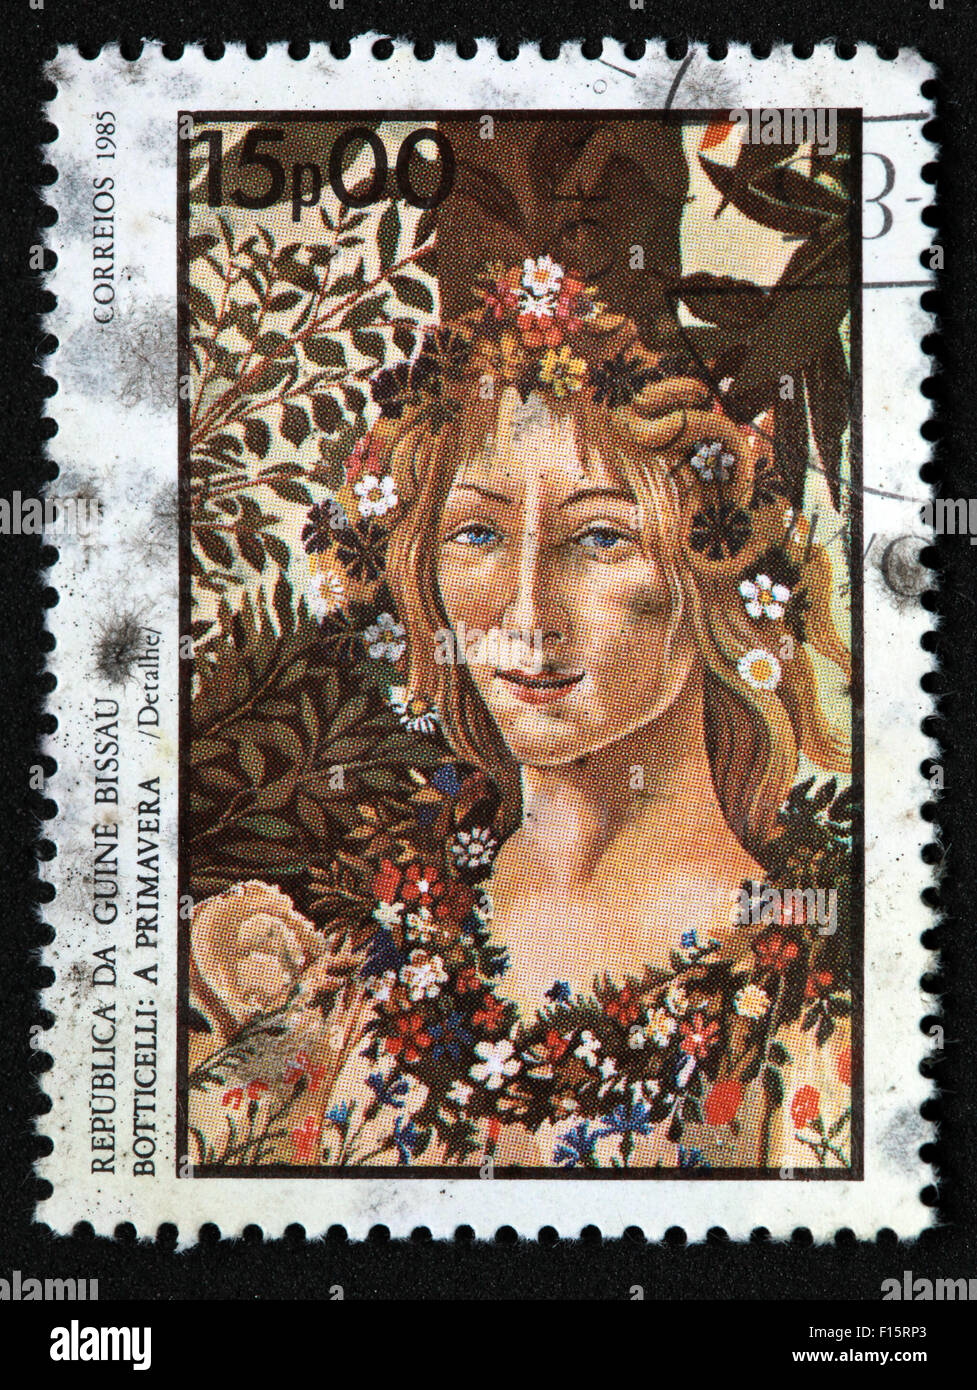 Republica Da Nelkenrevolution Bissau Botticelli eine Primavera Frühling in Correios 1985 15p 00 Mädchen Frau Blumen im Haar-Stempel Stockfoto